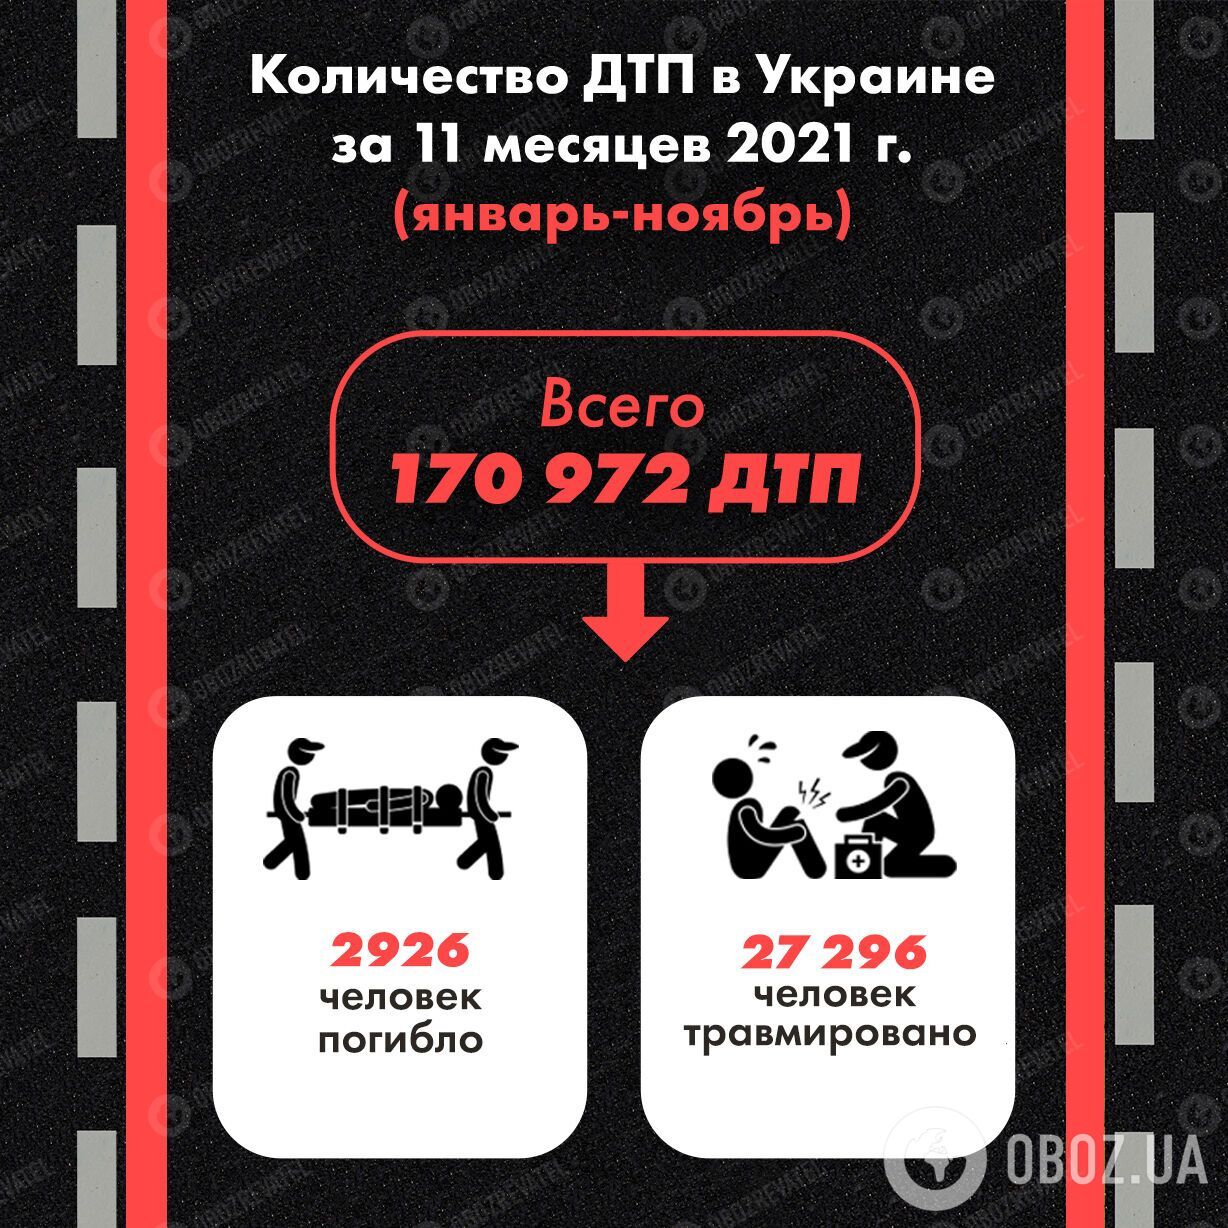 Количество ДТП в Украине за 11 месяцев 2021 года.